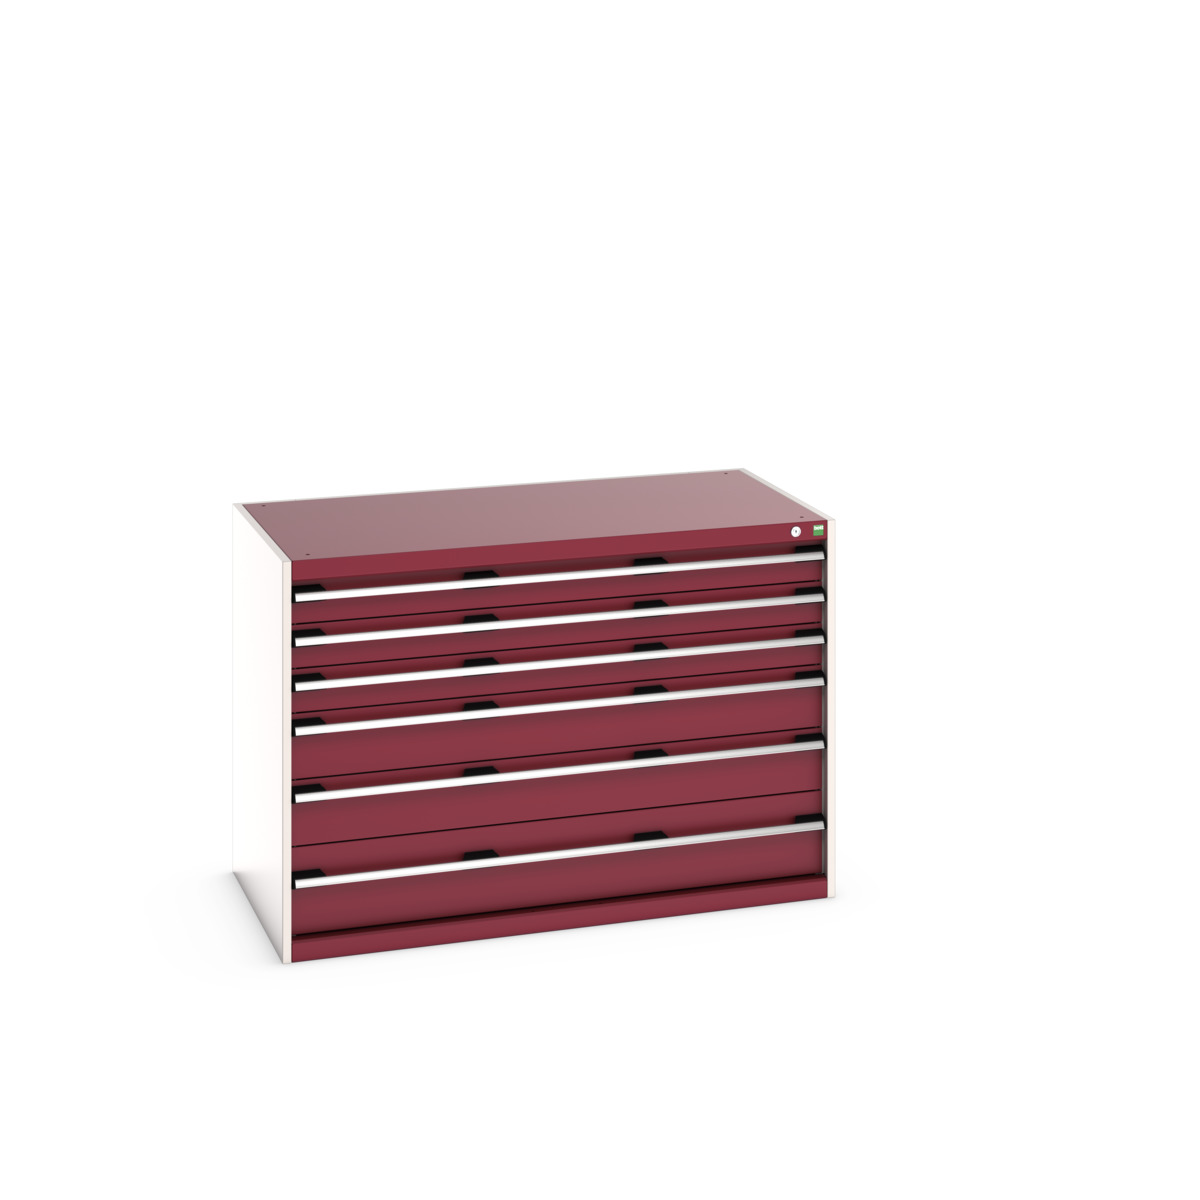 40030085.24V - cubio drawer cabinet